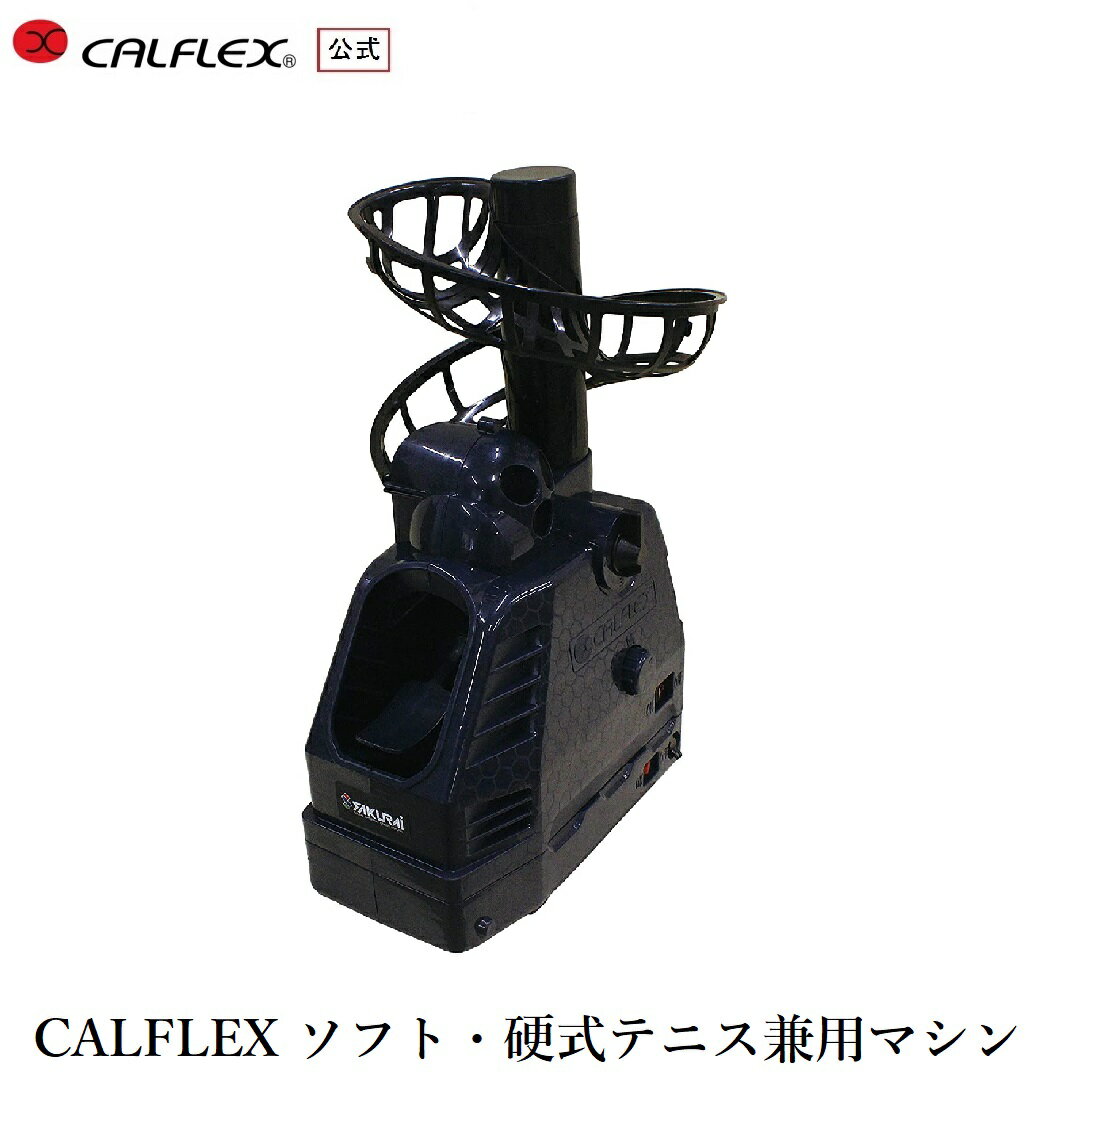 サクライ貿易(SAKURAI)カルフレックス(CALFLEX)ソフト 硬式テニス兼用マシン CT-0 ...